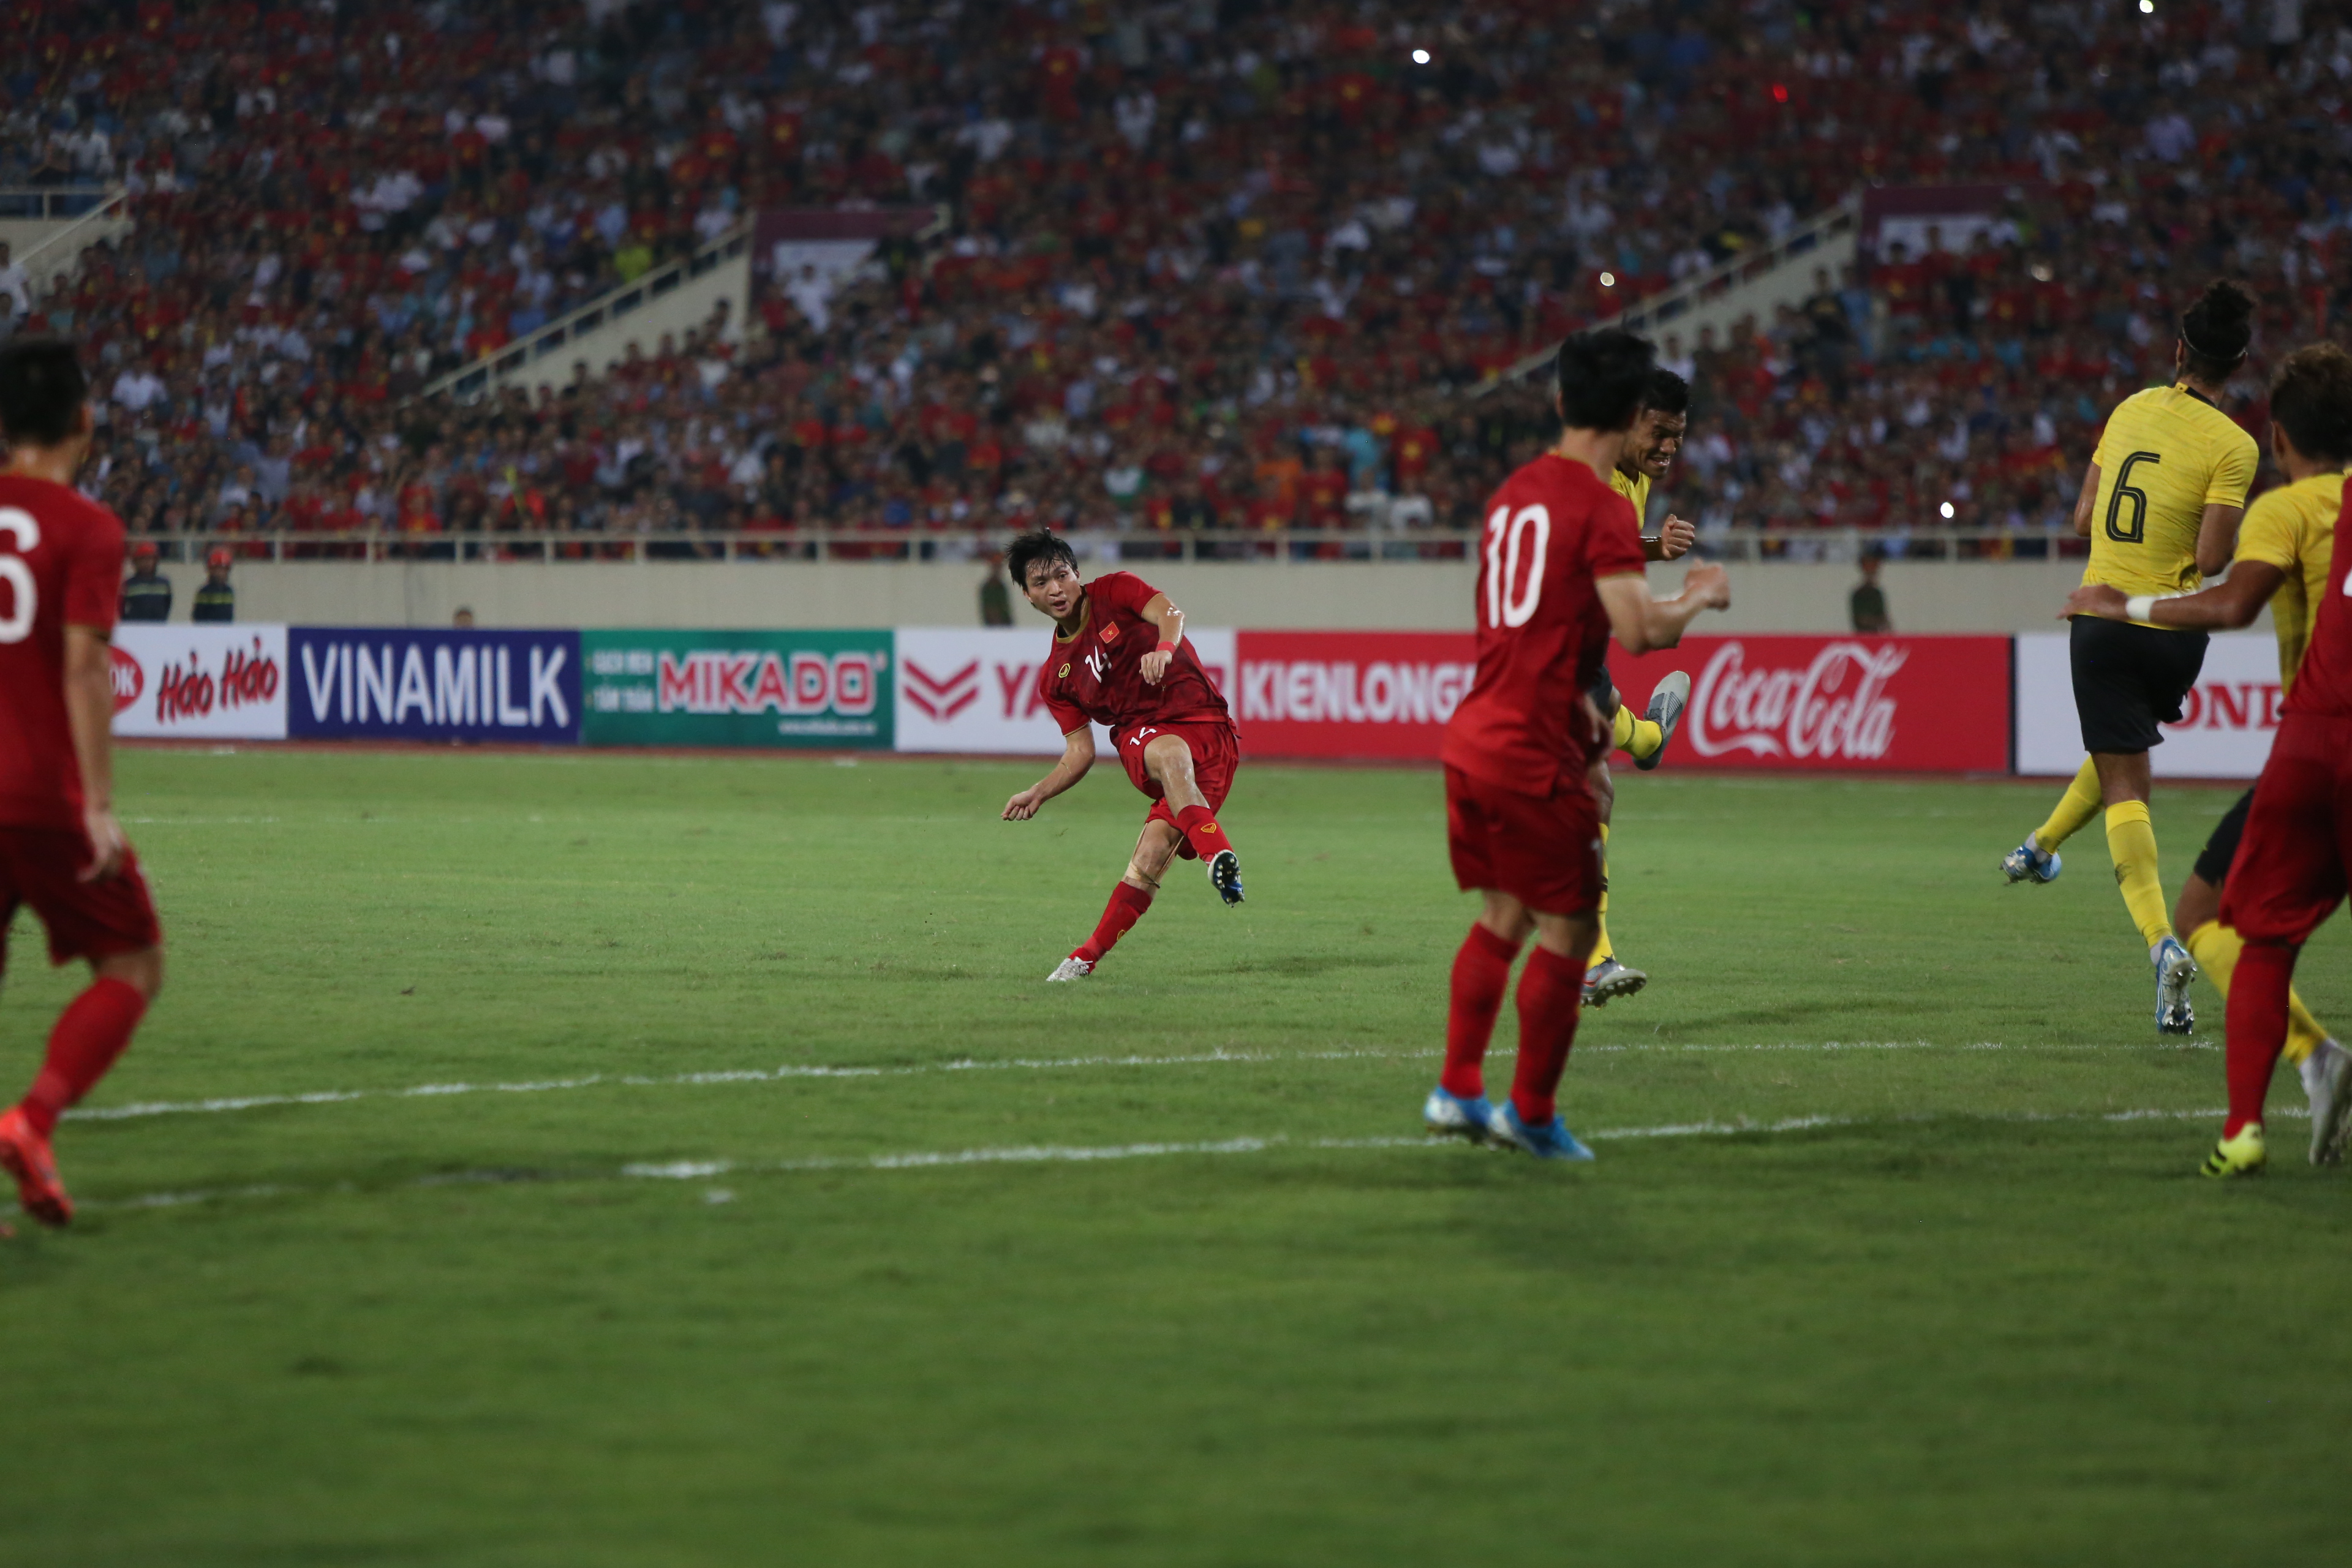 HLV Park Hang-seo chốt danh sách 23 cầu thủ cho trận đấu với ĐT Indonesia - Bóng Đá